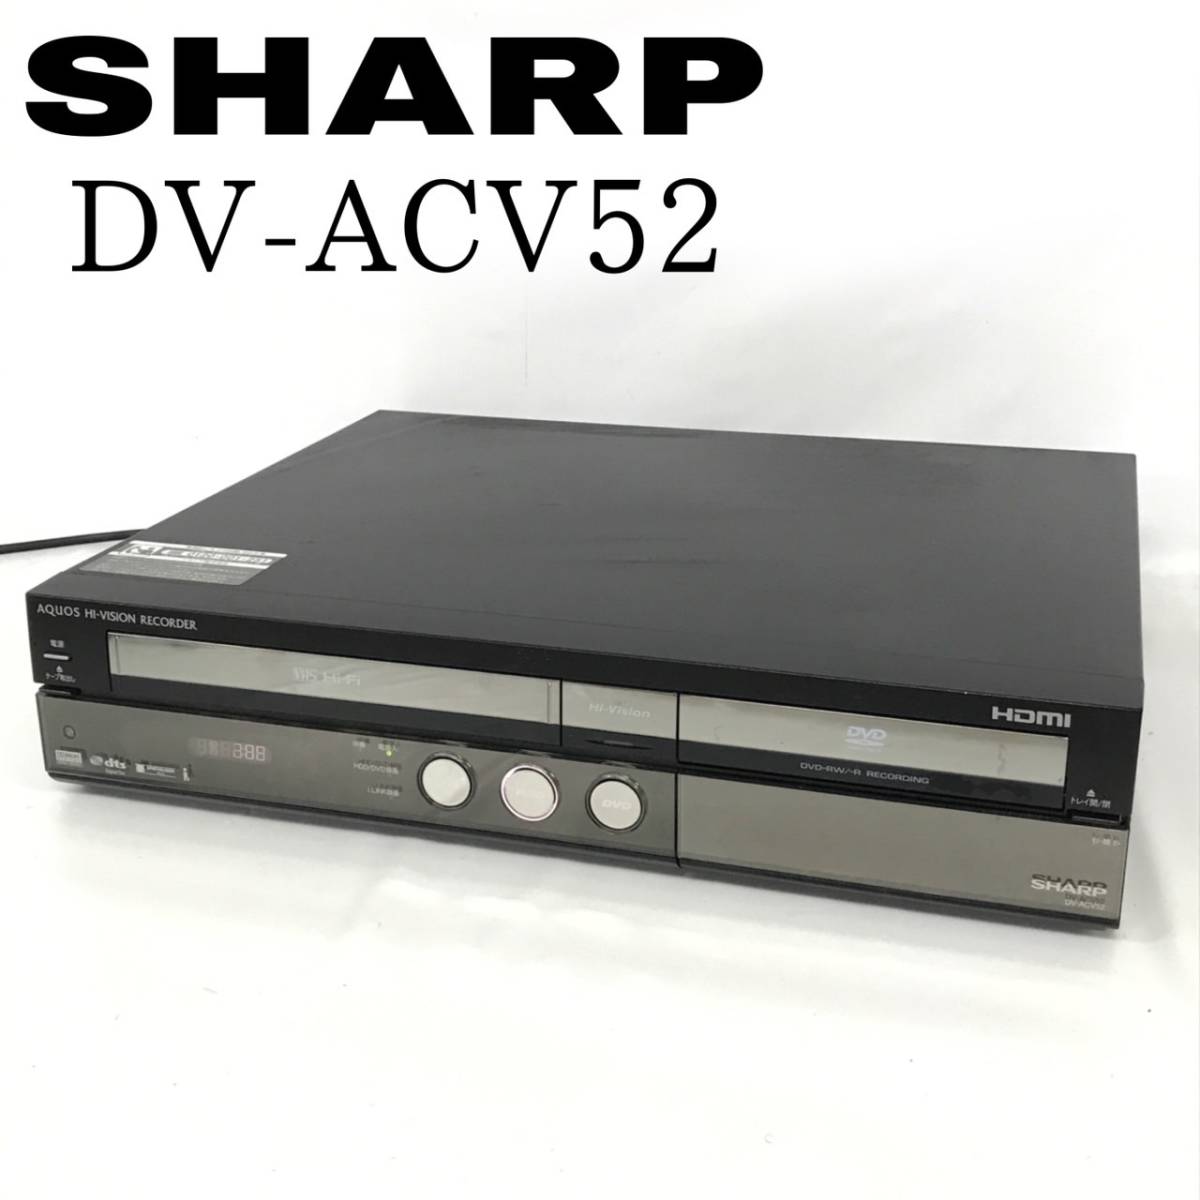 ショップ活動 SHARP AQUOS ハイビジョンレコーダー DV-ACV52 DVD